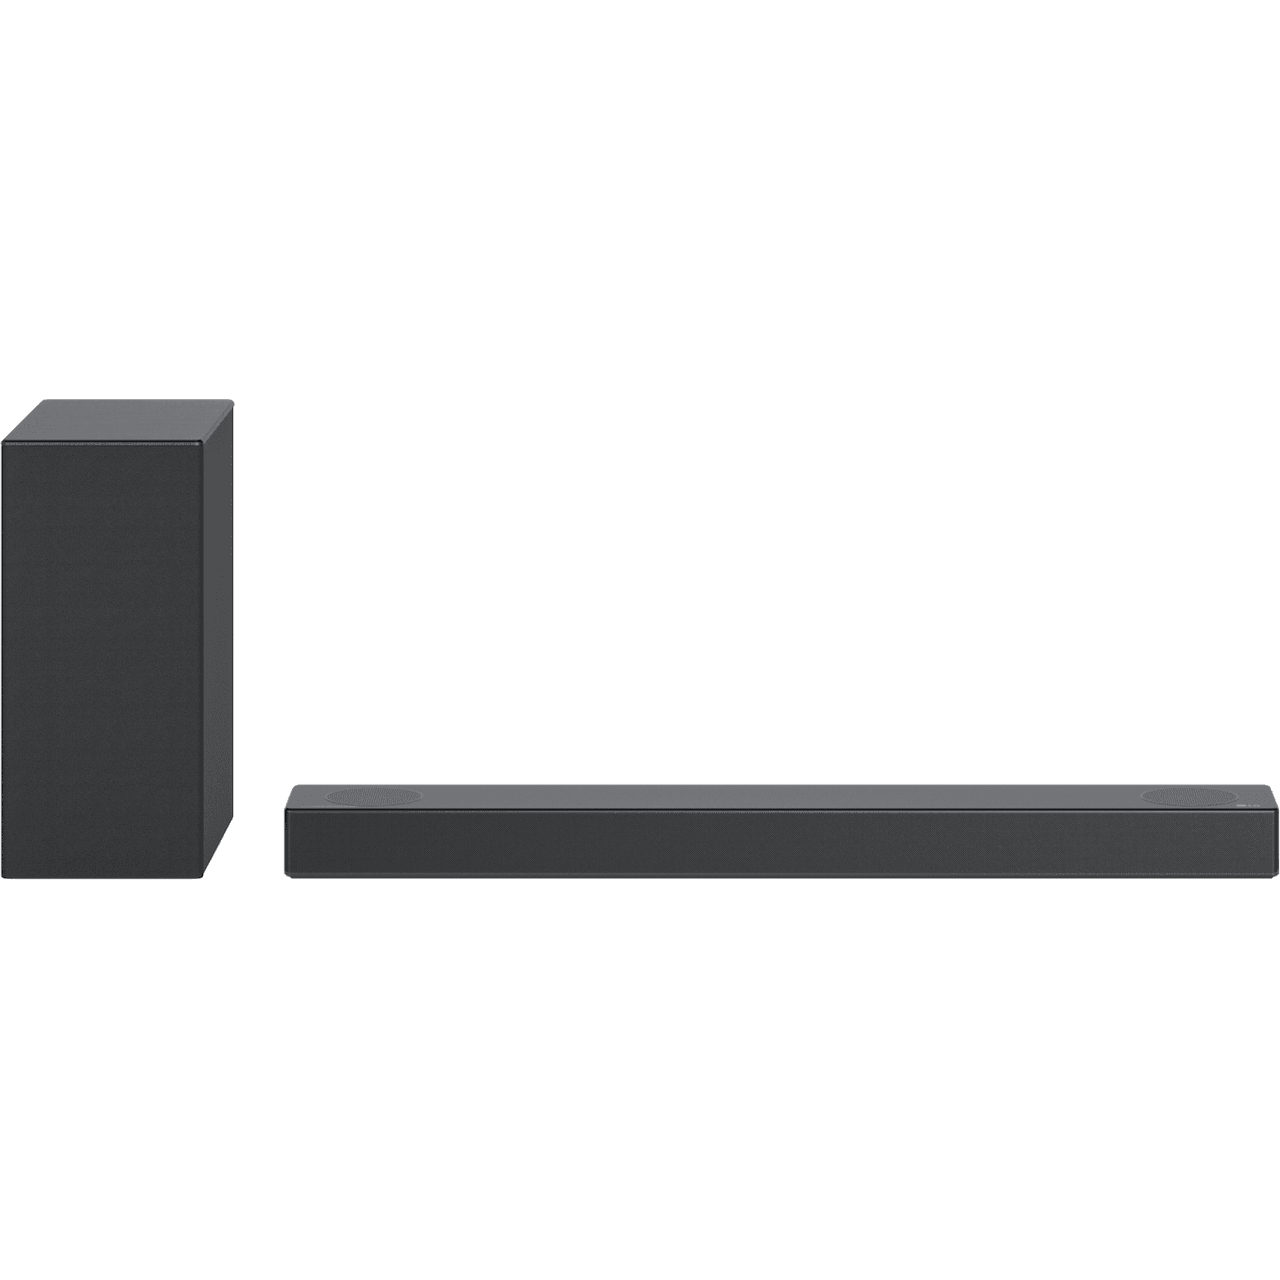 LG S75Q Soundbar with Subwoofer - Black - Refurbished Excellent